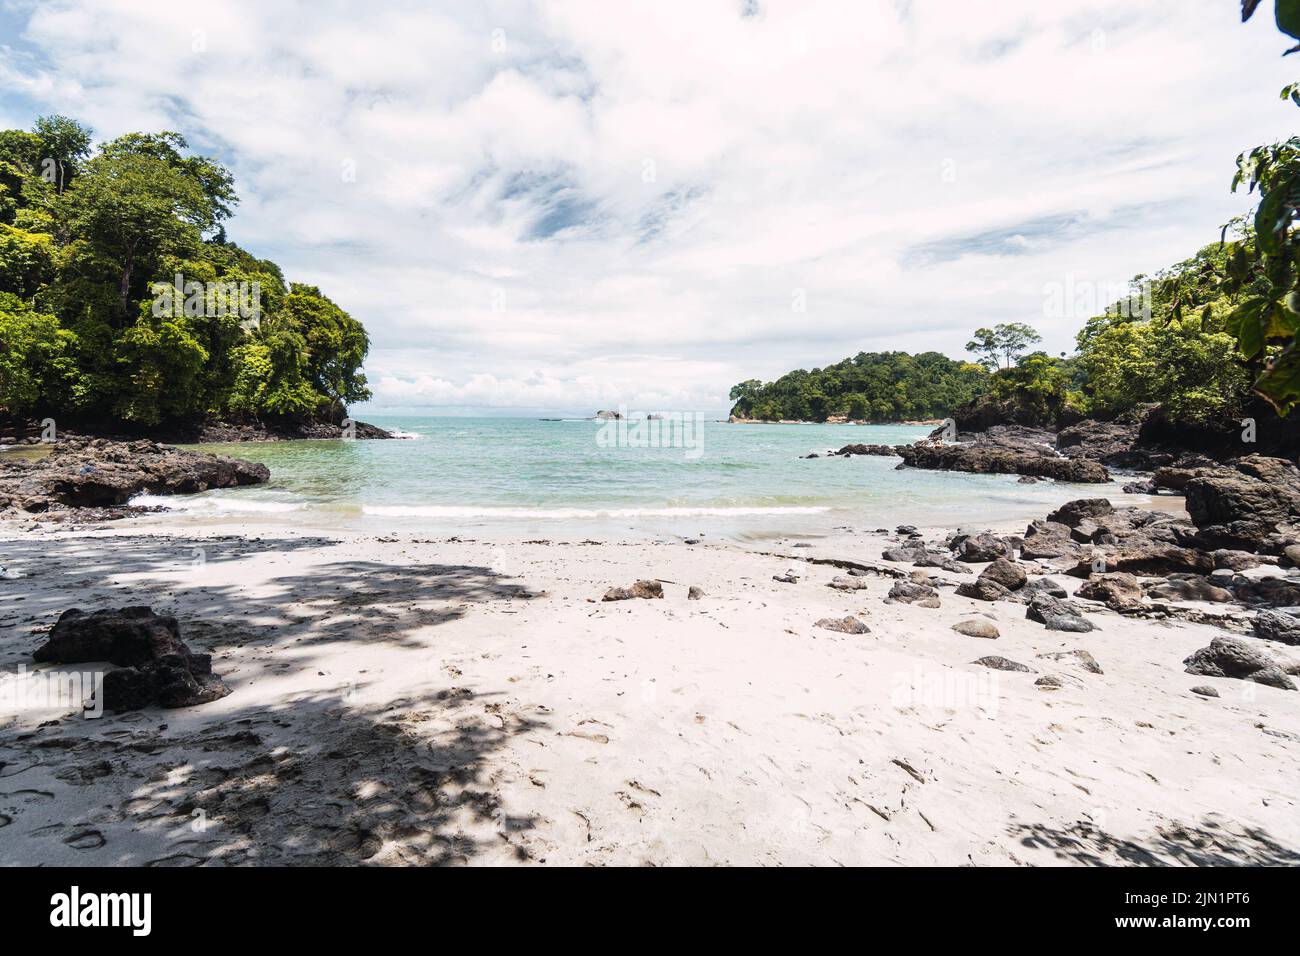 jungle, beach and sea landscape of Costa Rica Stock Photo